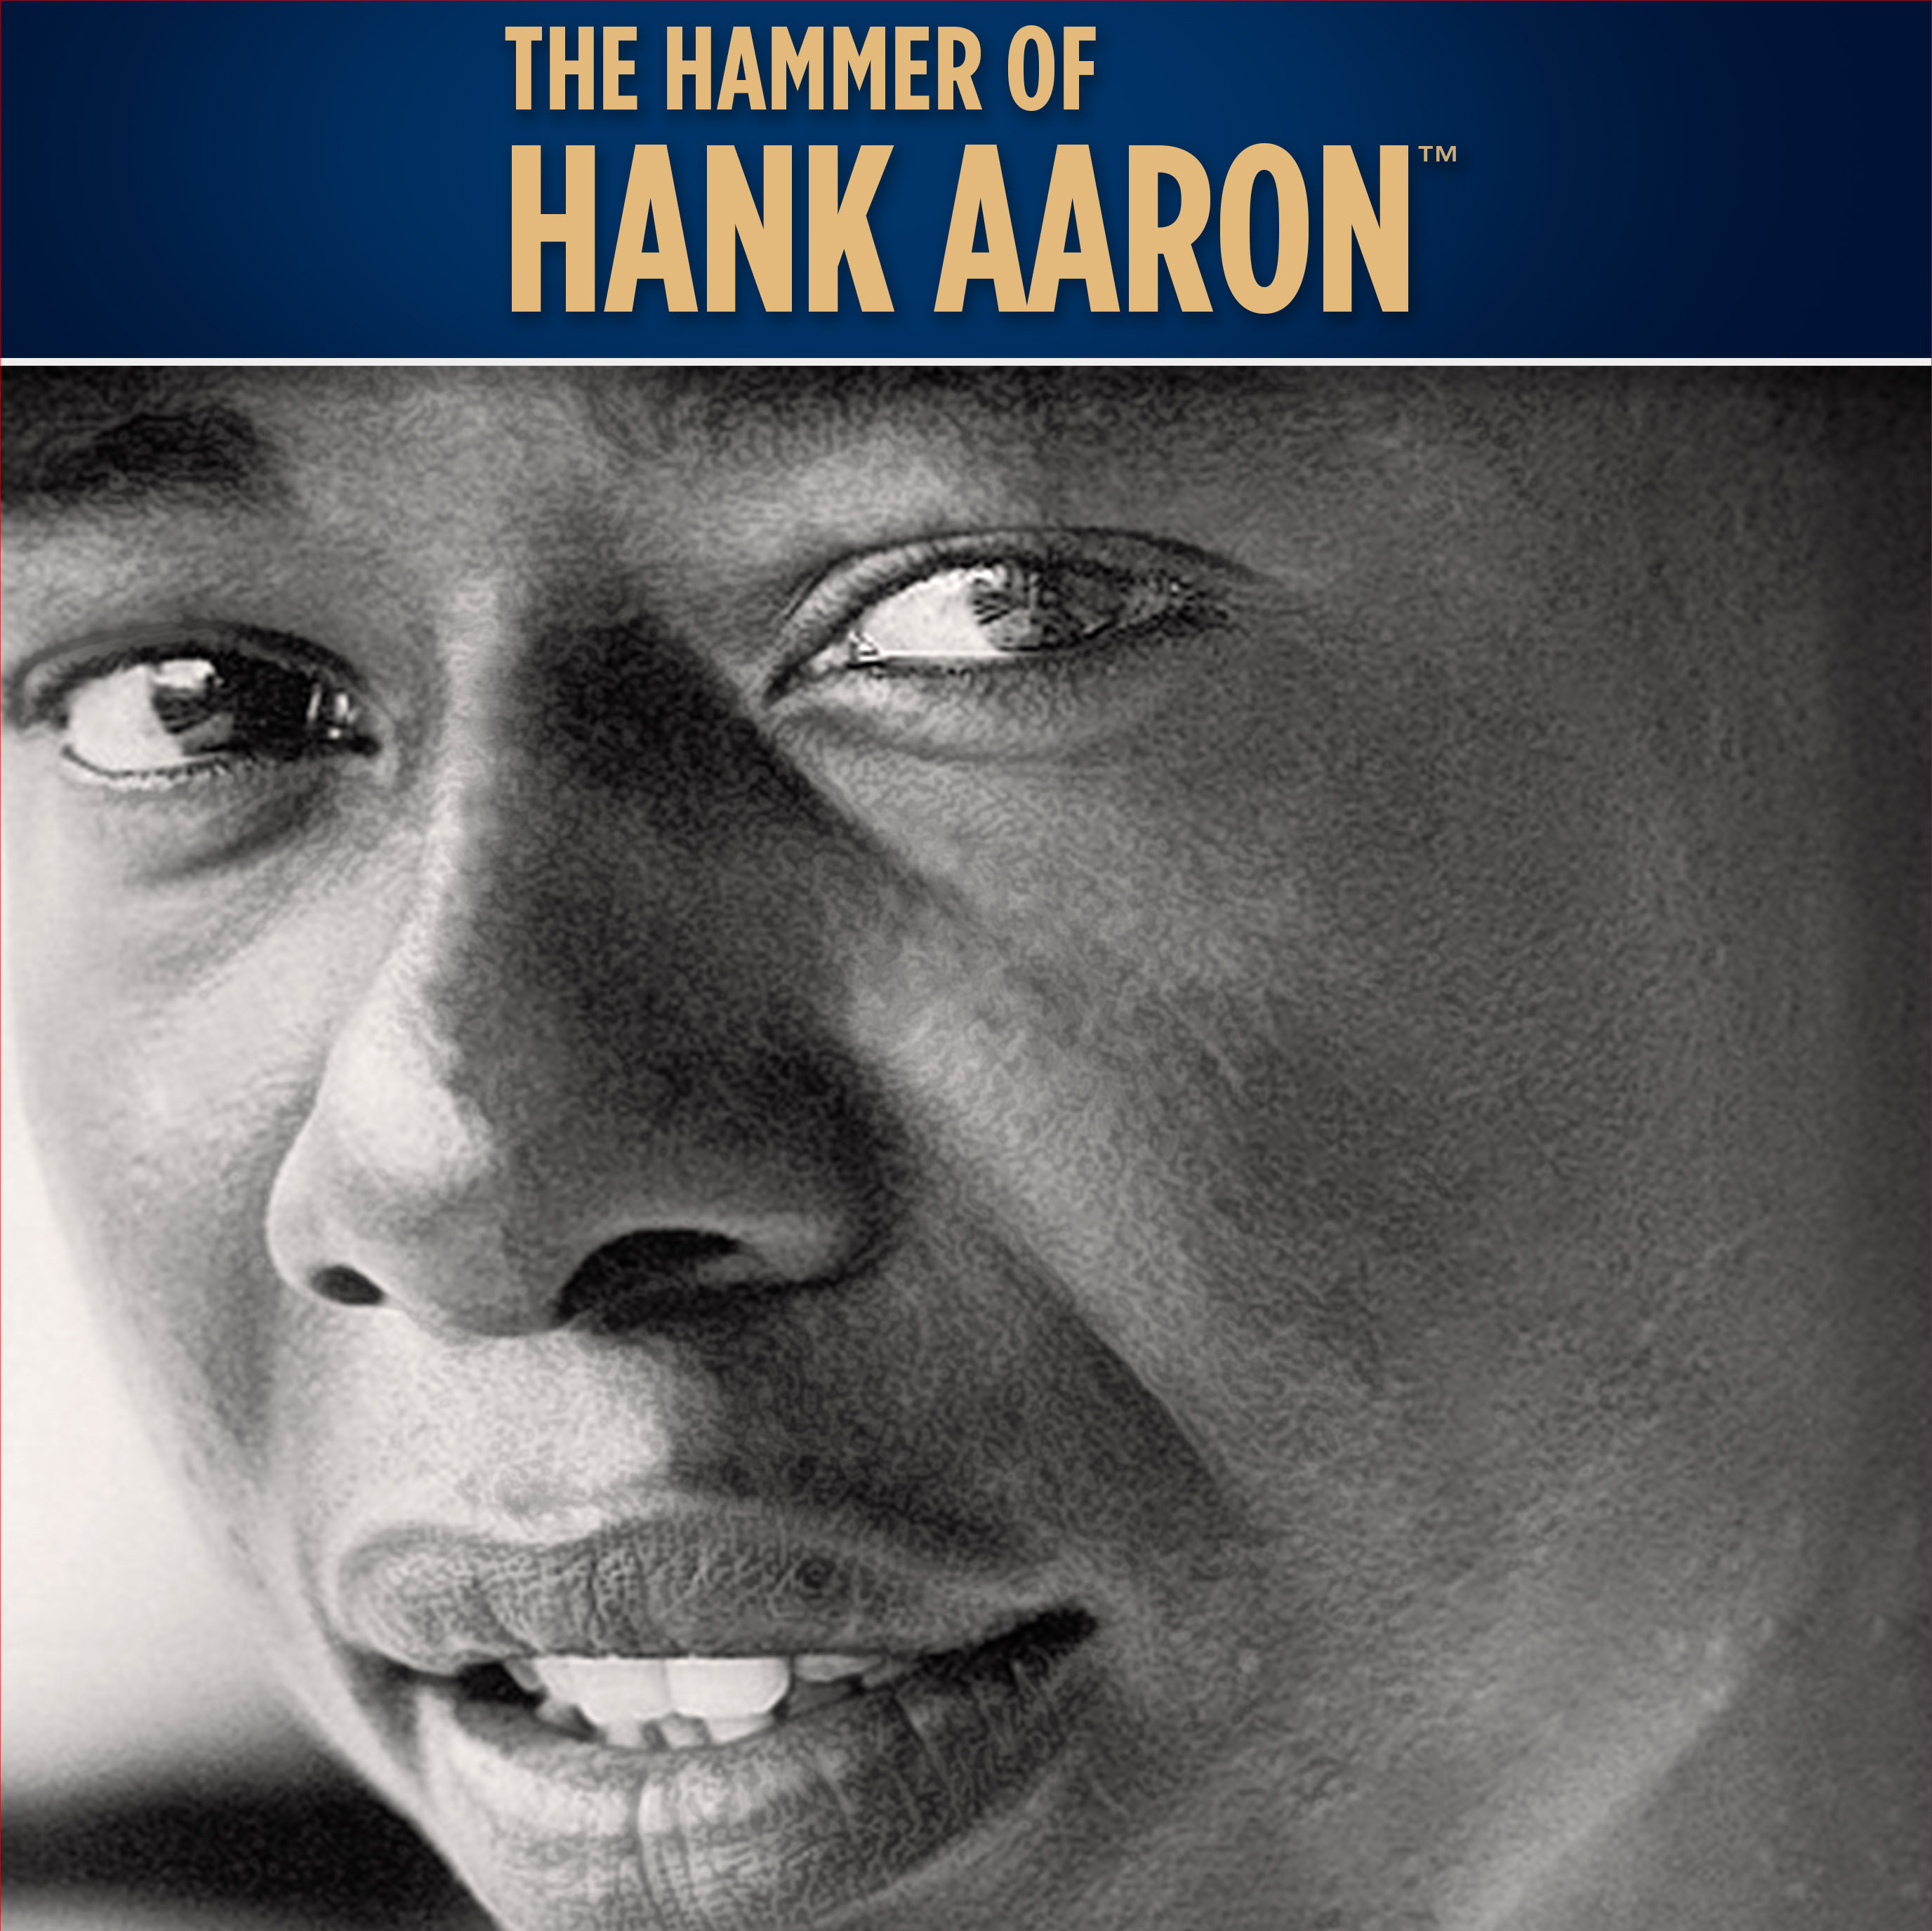 The Hammer of Hank Aaron